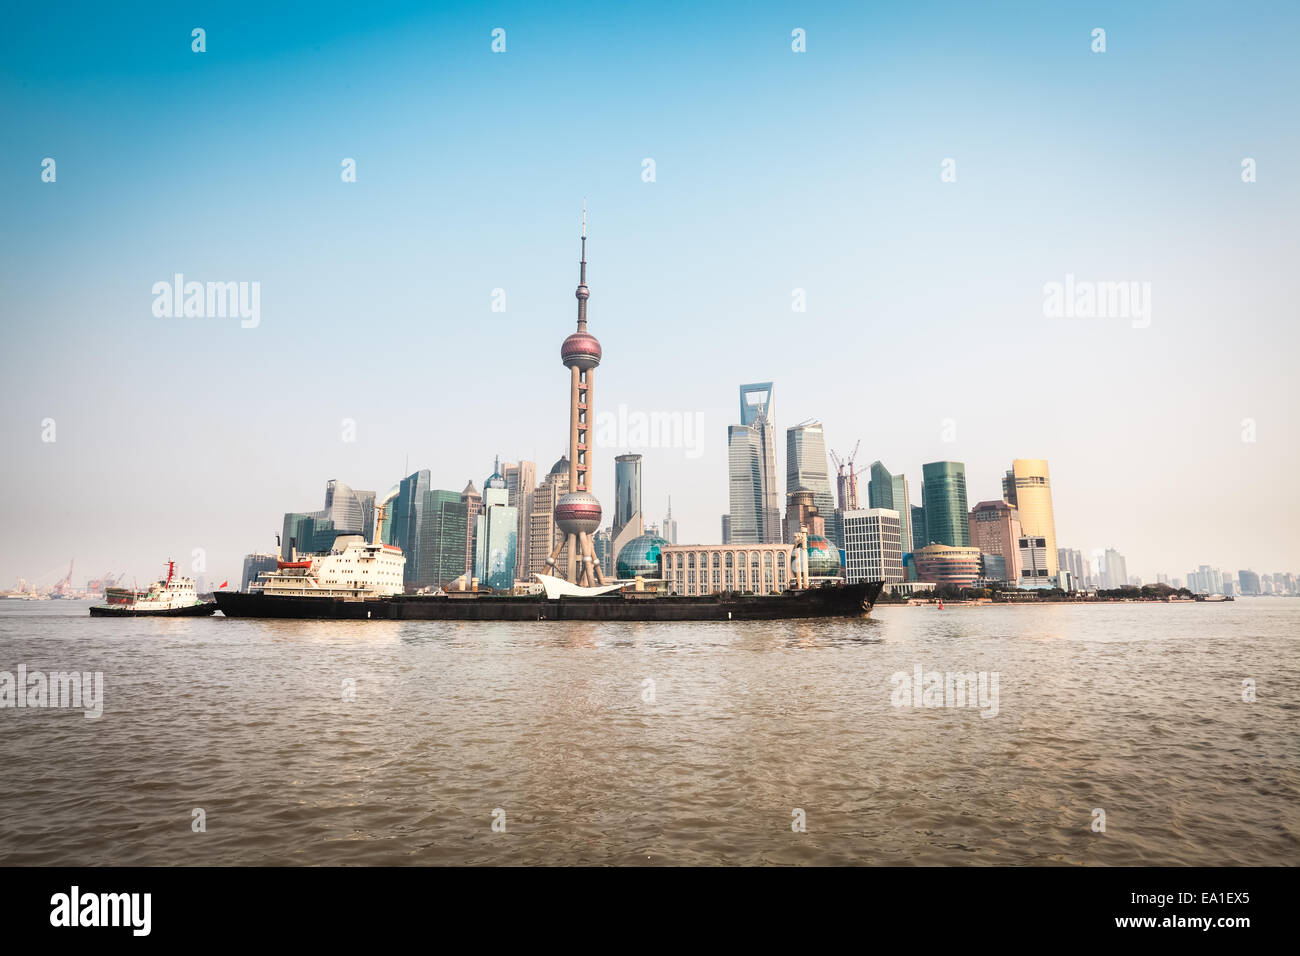 shanghai skyline and cargo ship Stock Photo